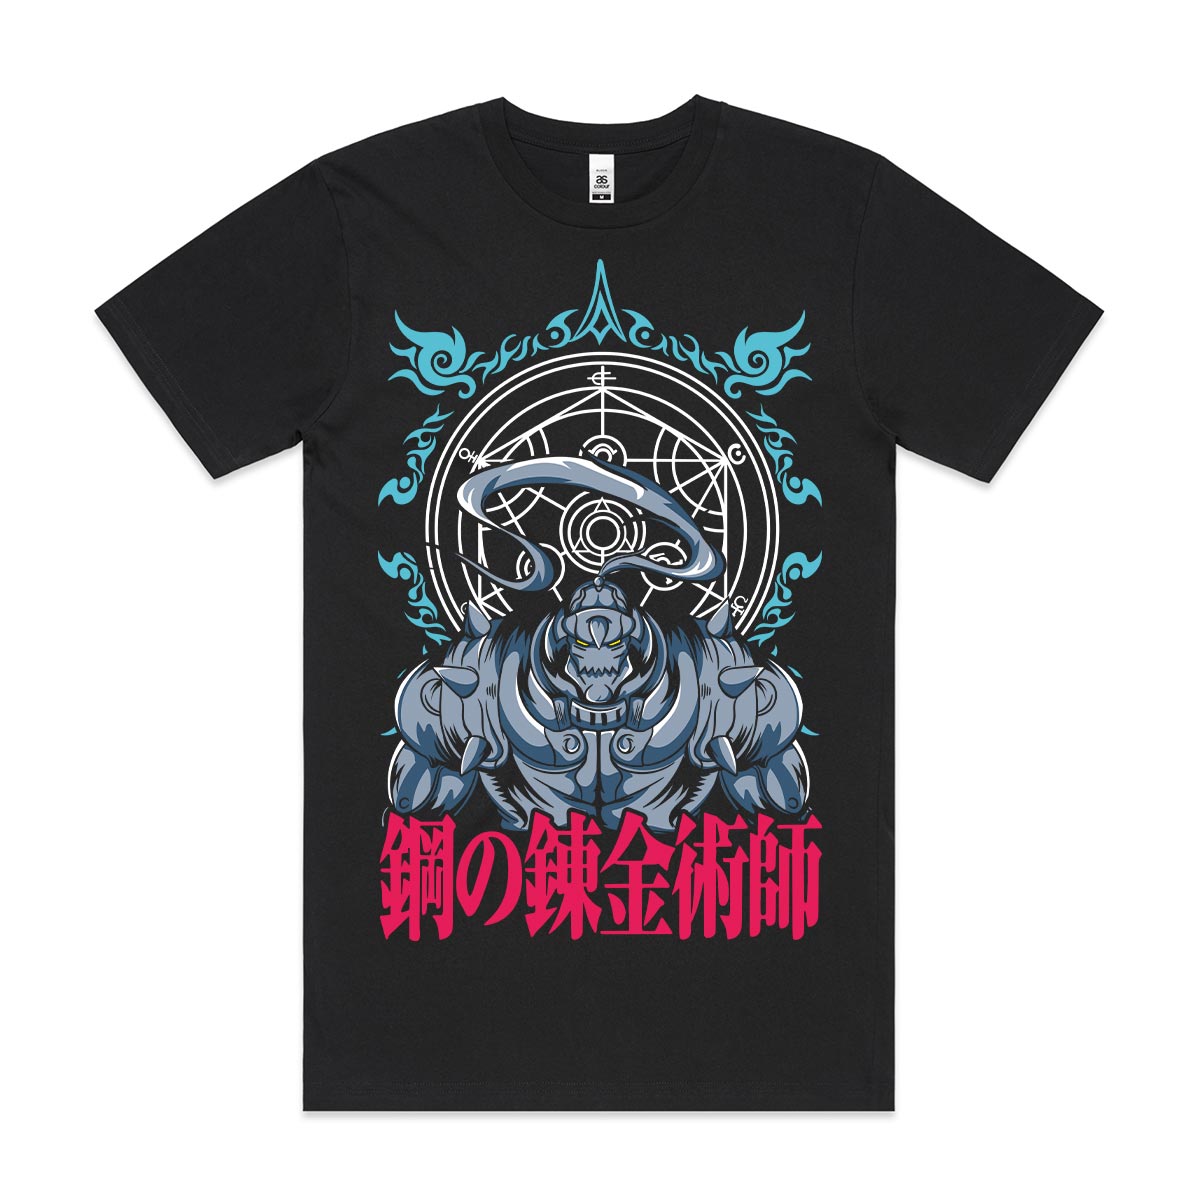 Fullmetal Alchemist Alphonse Elric V2 T-Shirt Japanese Anime Tee